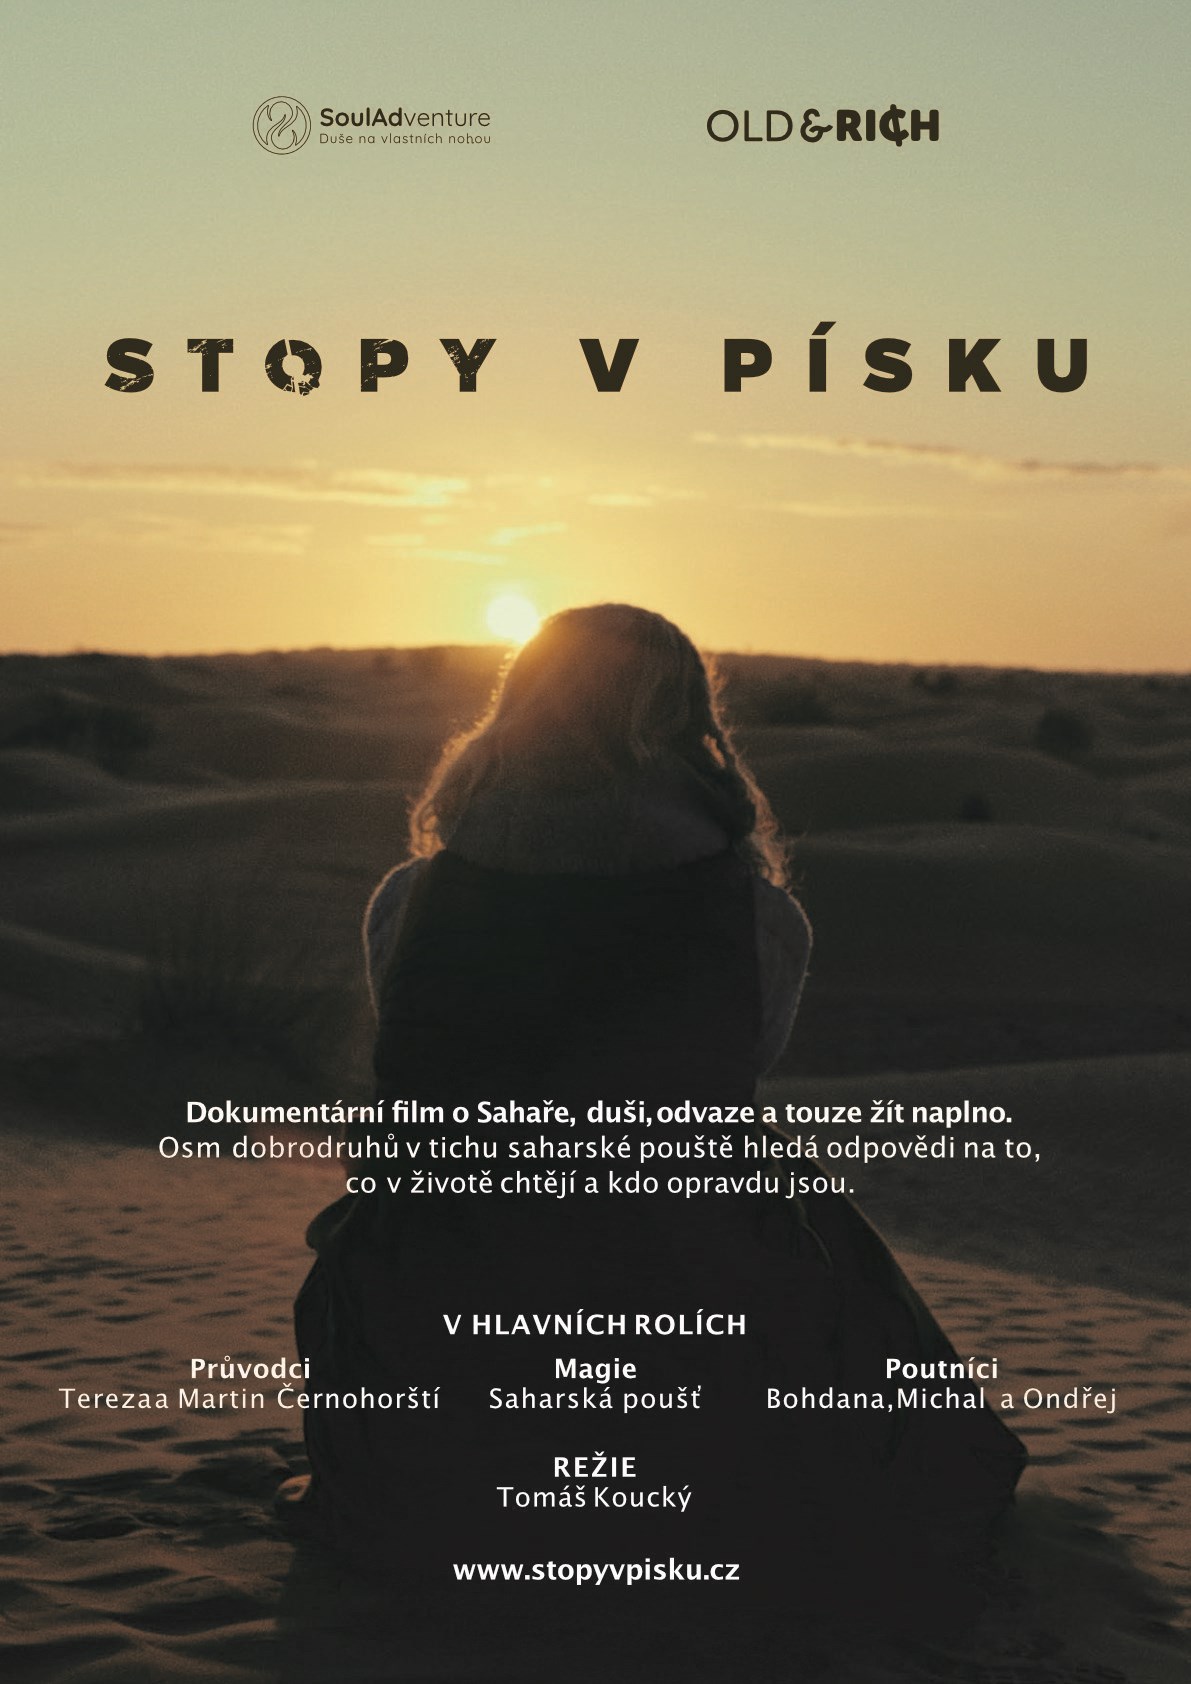 Promítání filmu Stopy v písku VELKÝ MLÝN, Praha Libeň